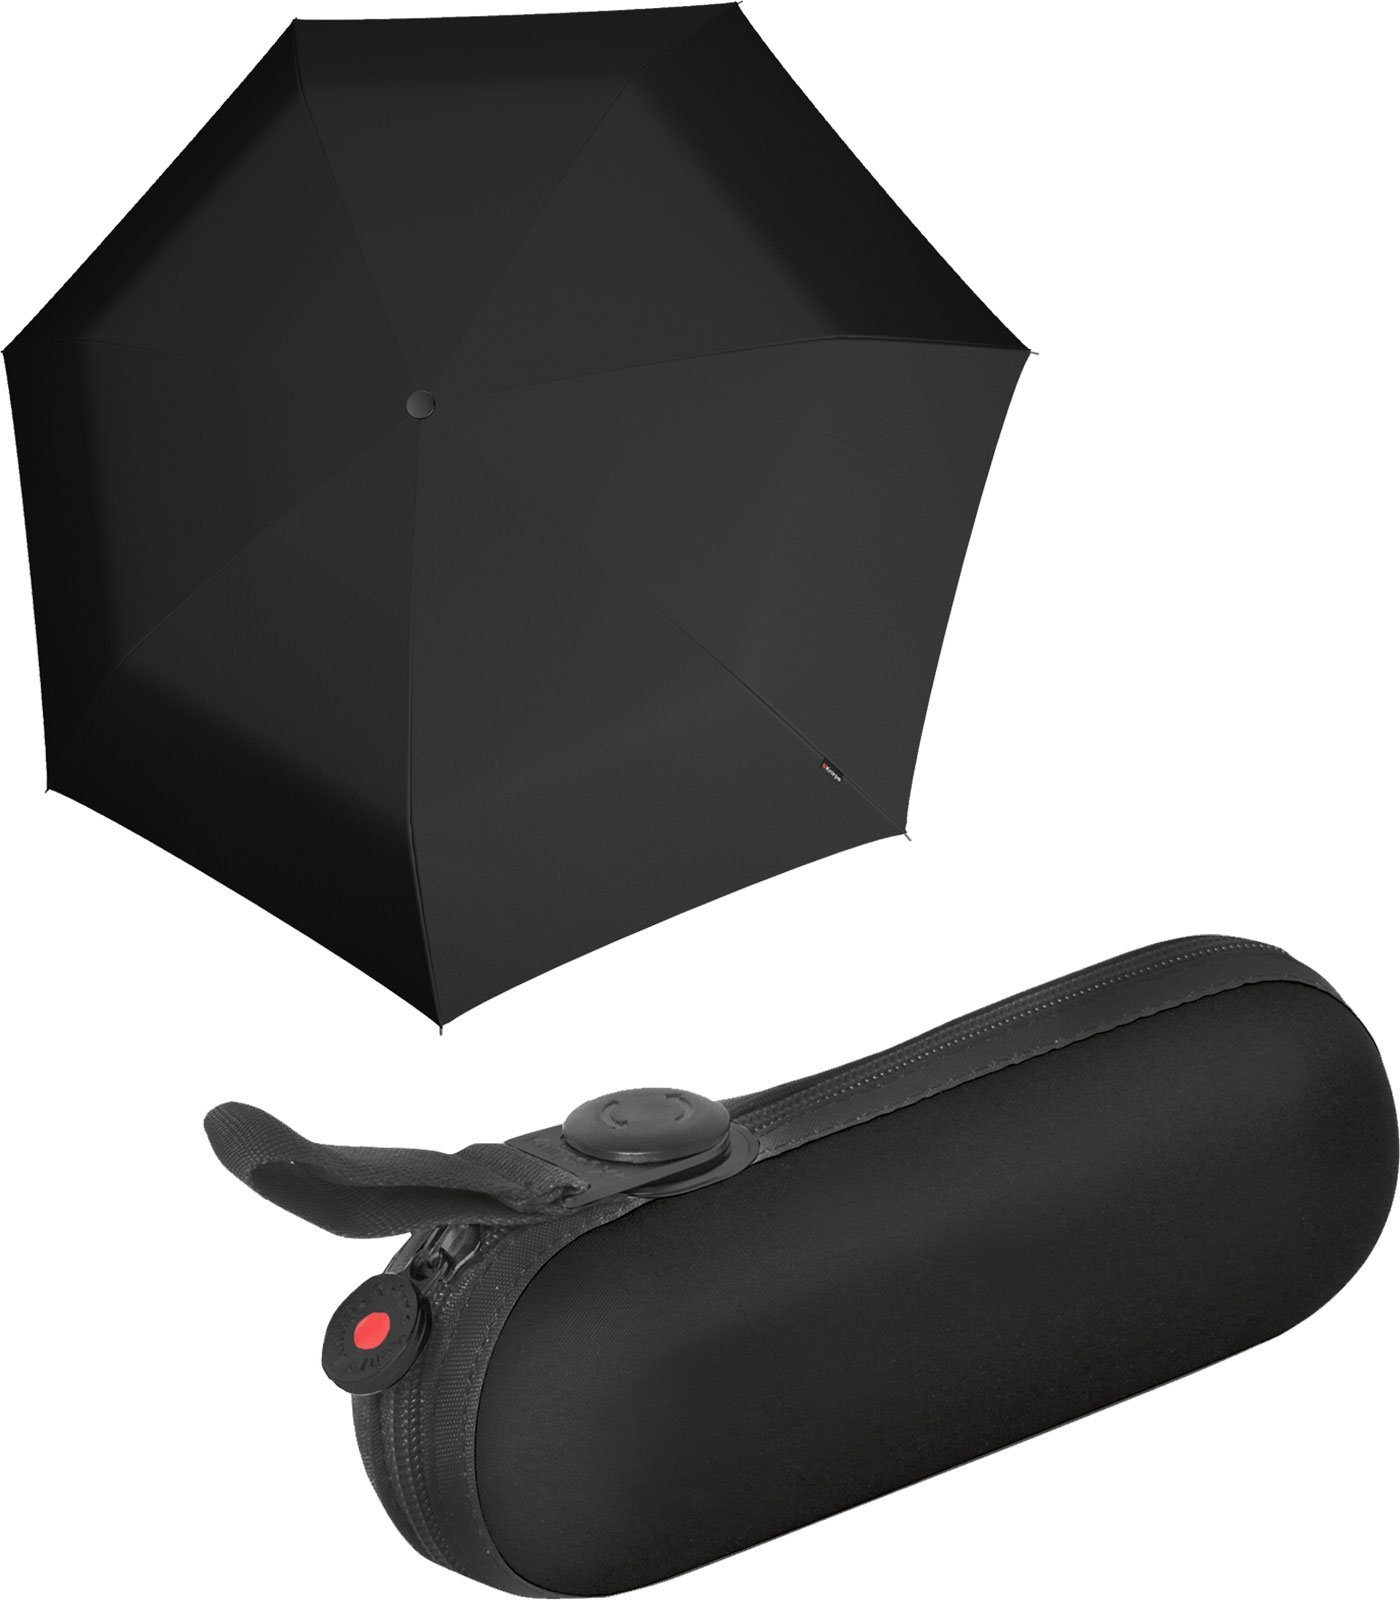 superthin Black durch die mini Damen-Schirm Schlaufe Etui, Knirps® Regenschirm winzig kleiner X1 Taschenregenschirm Befestigungsmöglichkeit für die im Handtasche mit Superthin praktische schwarz